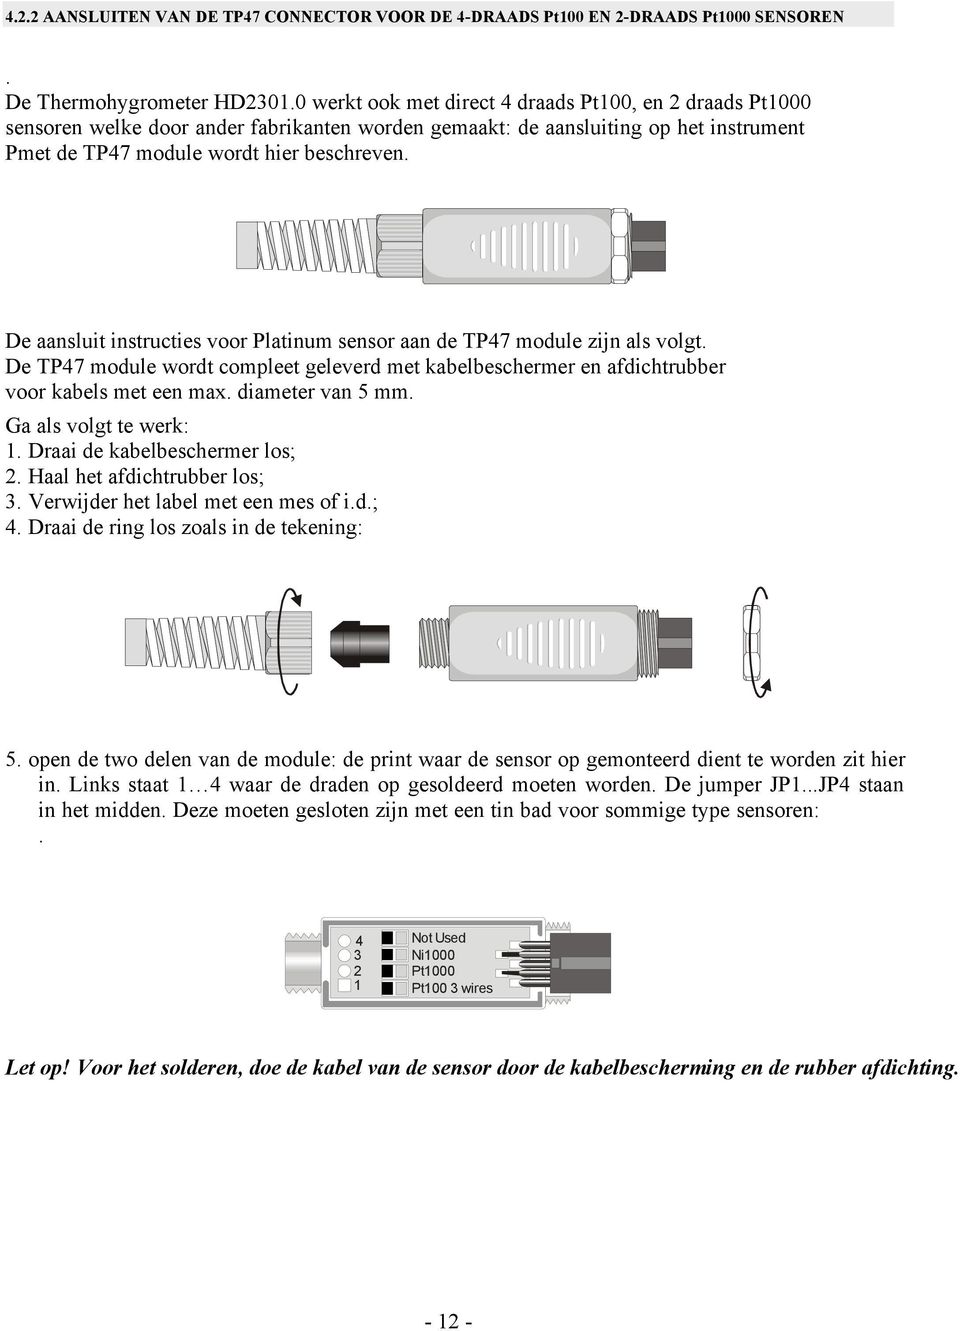 De aansluit instructies voor Platinum sensor aan de TP47 module zijn als volgt. De TP47 module wordt compleet geleverd met kabelbeschermer en afdichtrubber voor kabels met een max. diameter van 5 mm.